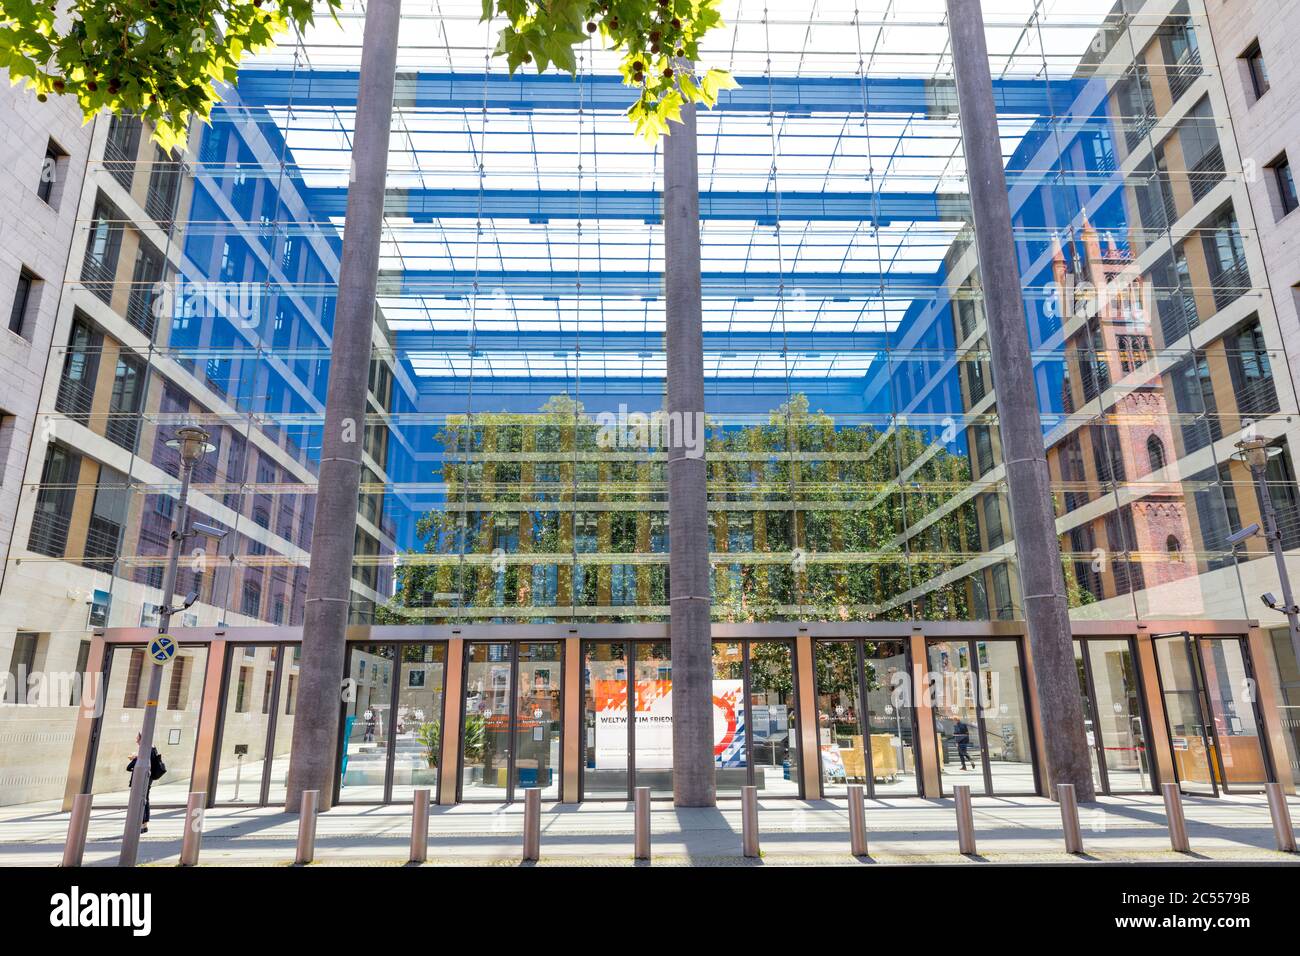 Bureau fédéral des affaires étrangères, Ministère des affaires étrangères, Werdescher Markt, façade, atrium, Mitte, Berlin, Allemagne Banque D'Images